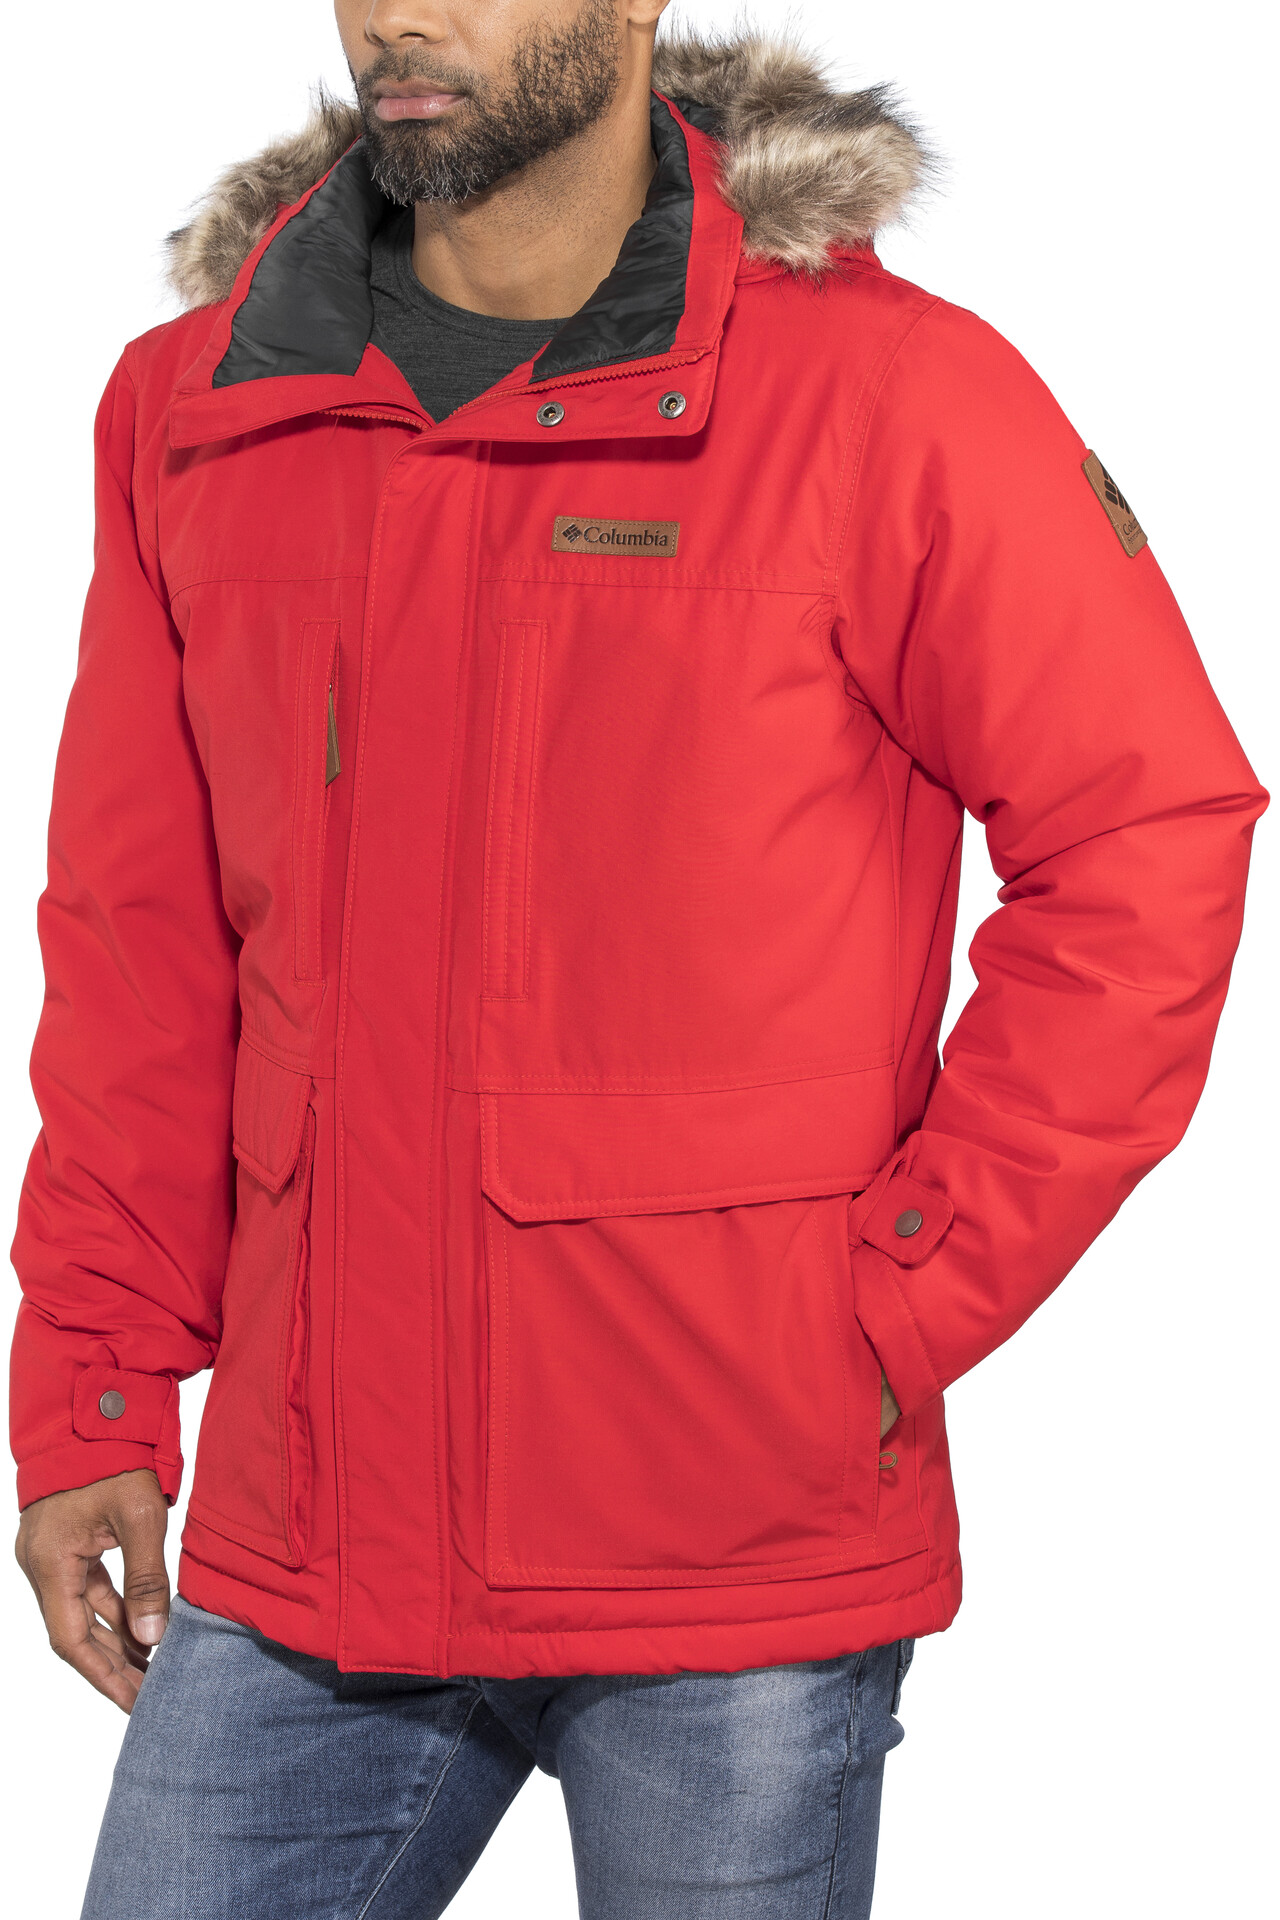 marquam peak jacket